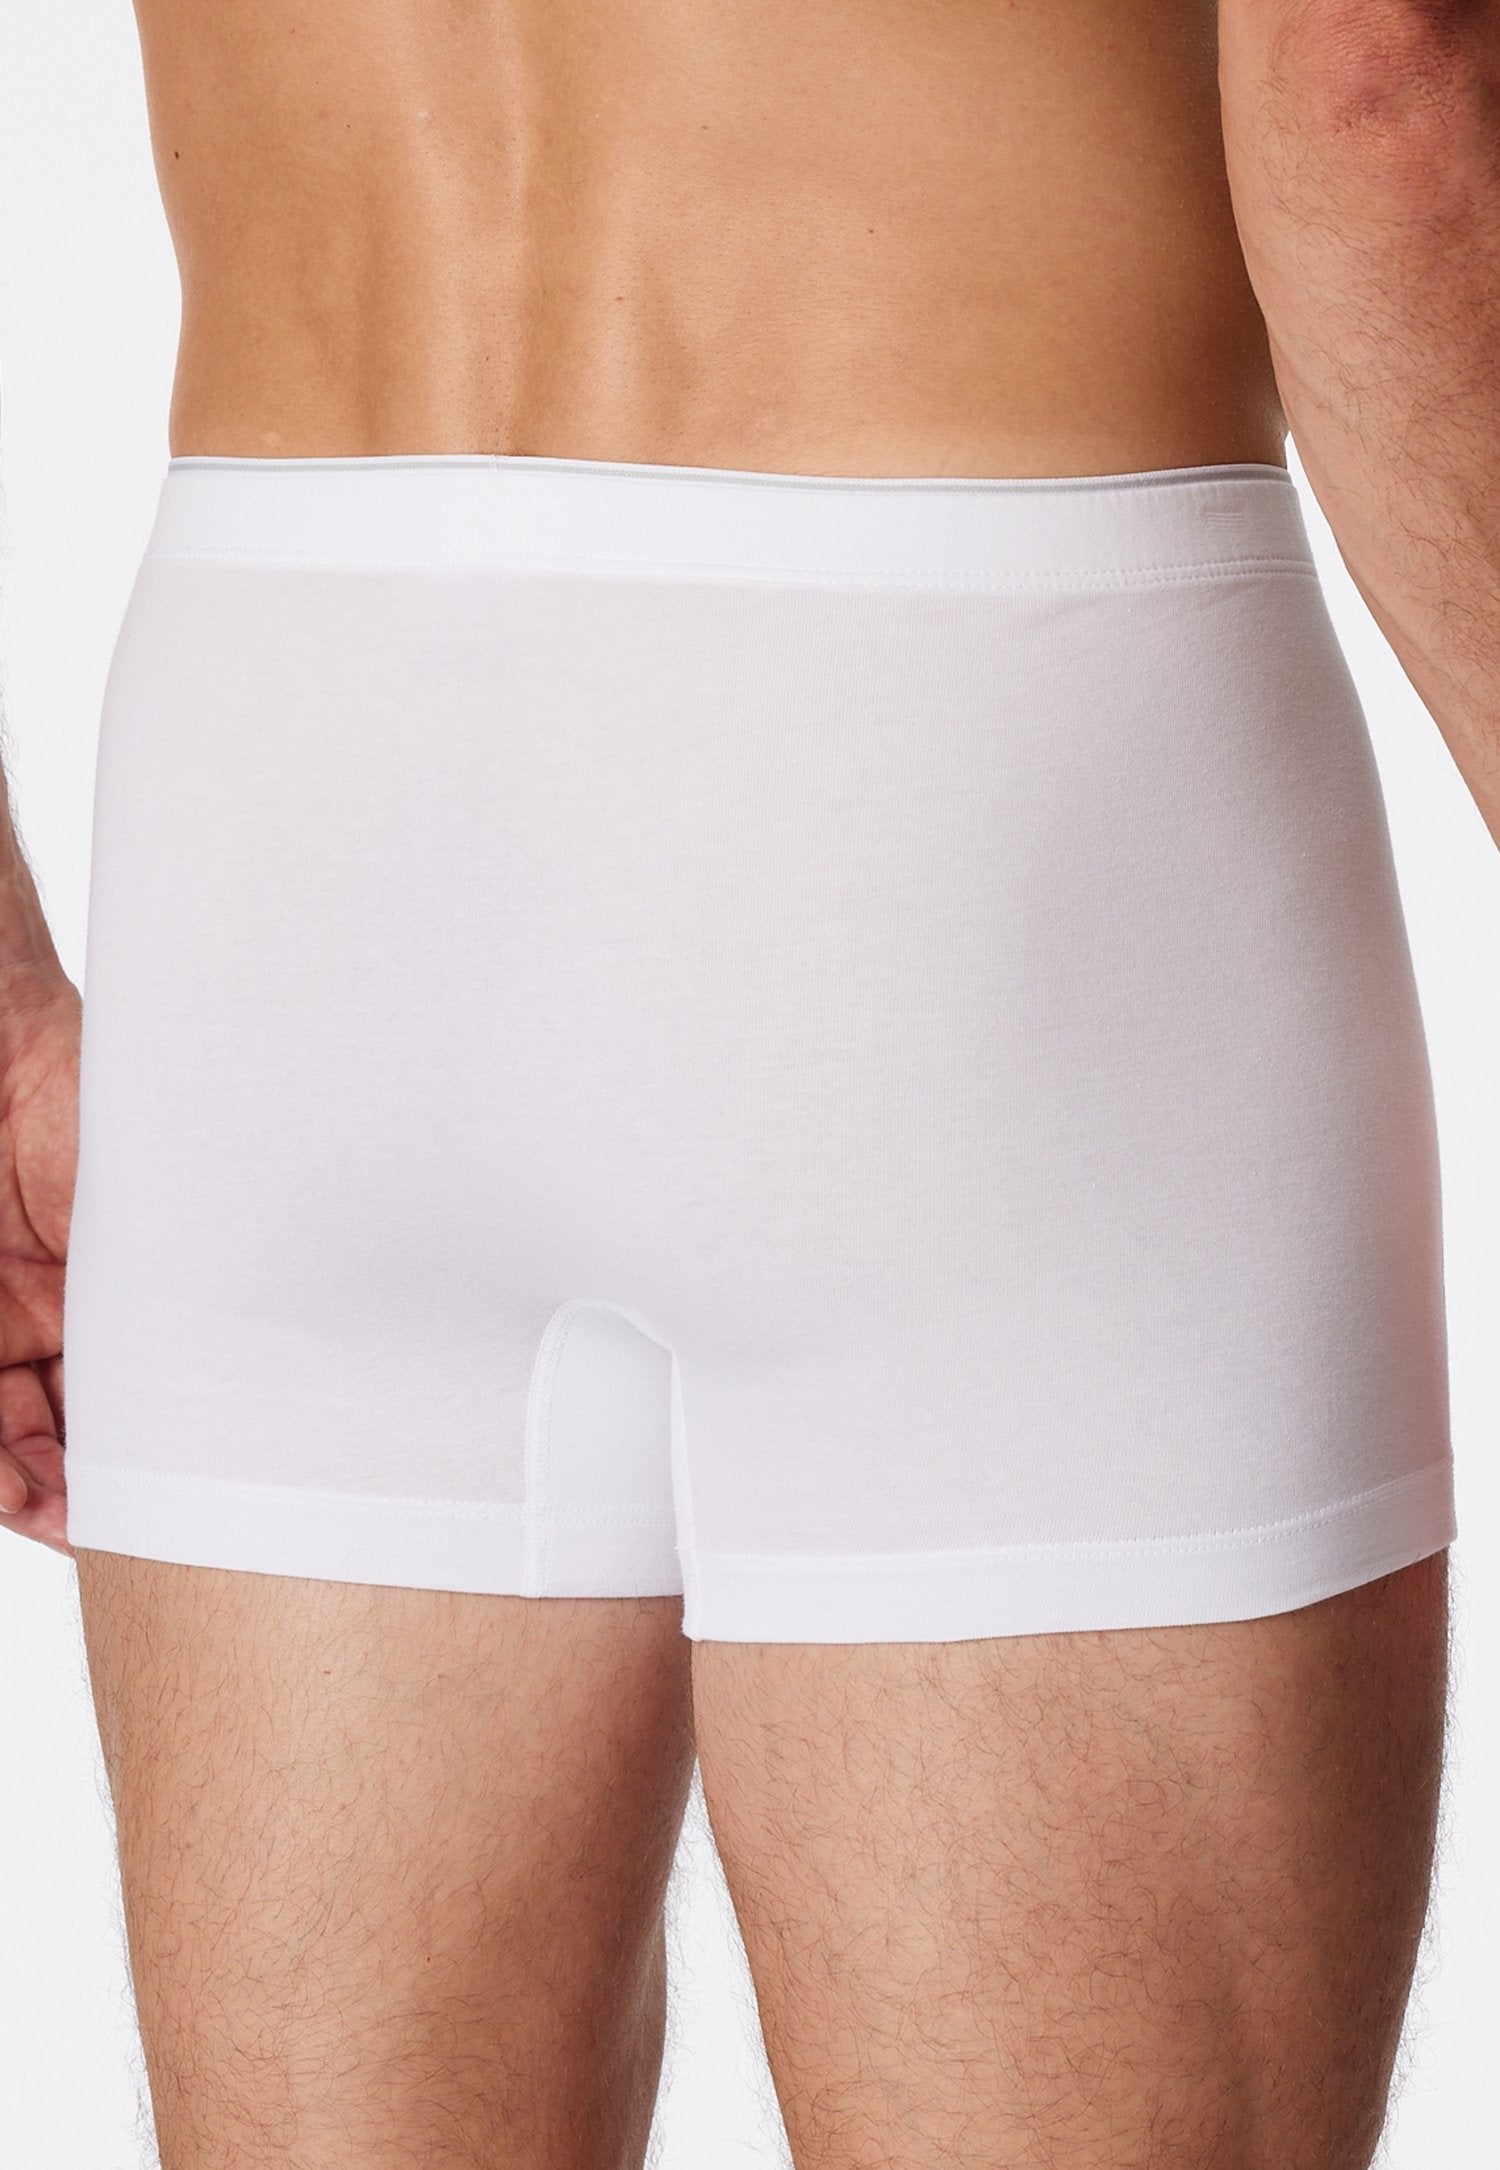 Shorts (Weiss)